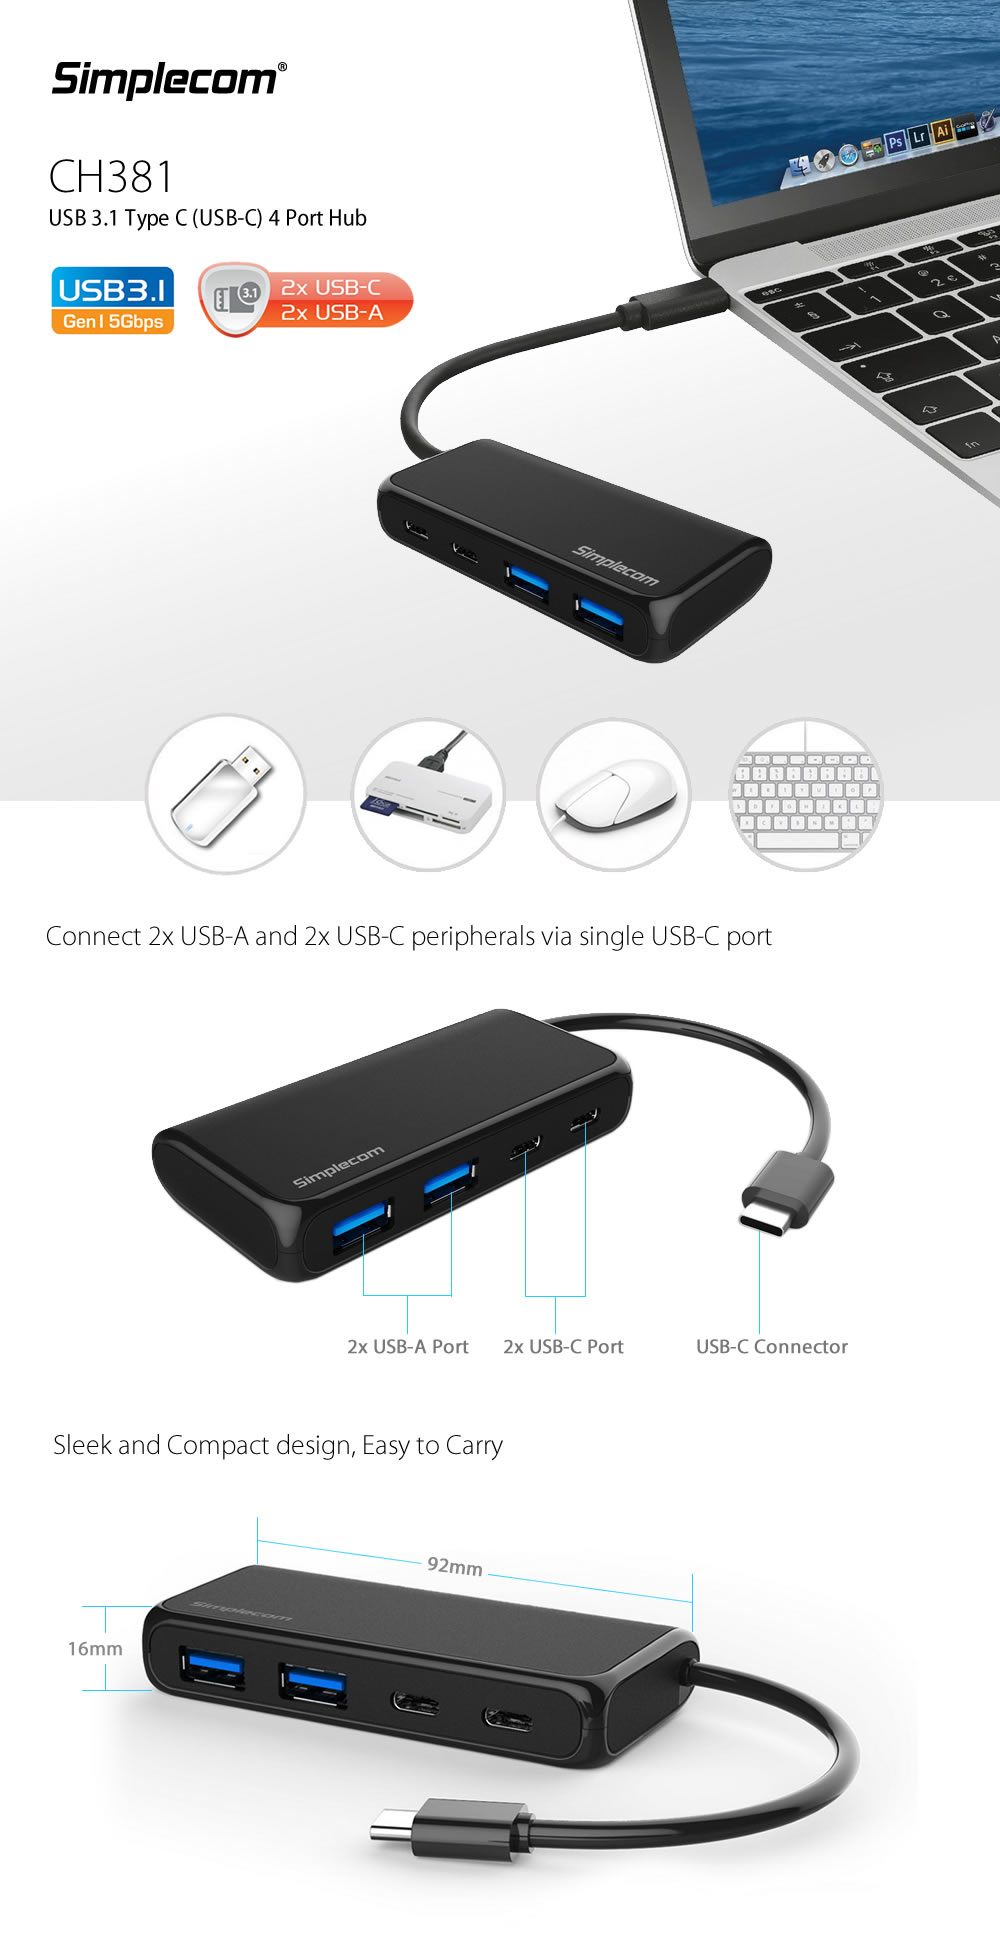 Simplecom CH381 USB 3.1 Type C (USB-C) 4 Port Hub (2x USB-A and 2x USB-C) 1